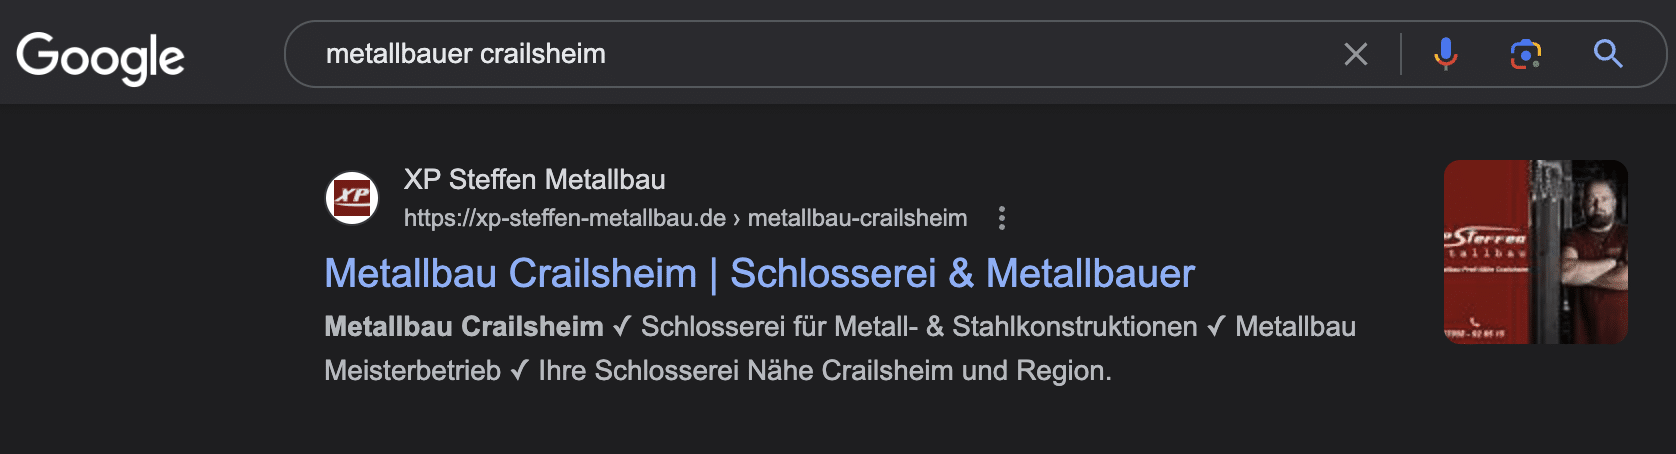 Metallbauer Crailsheim Google